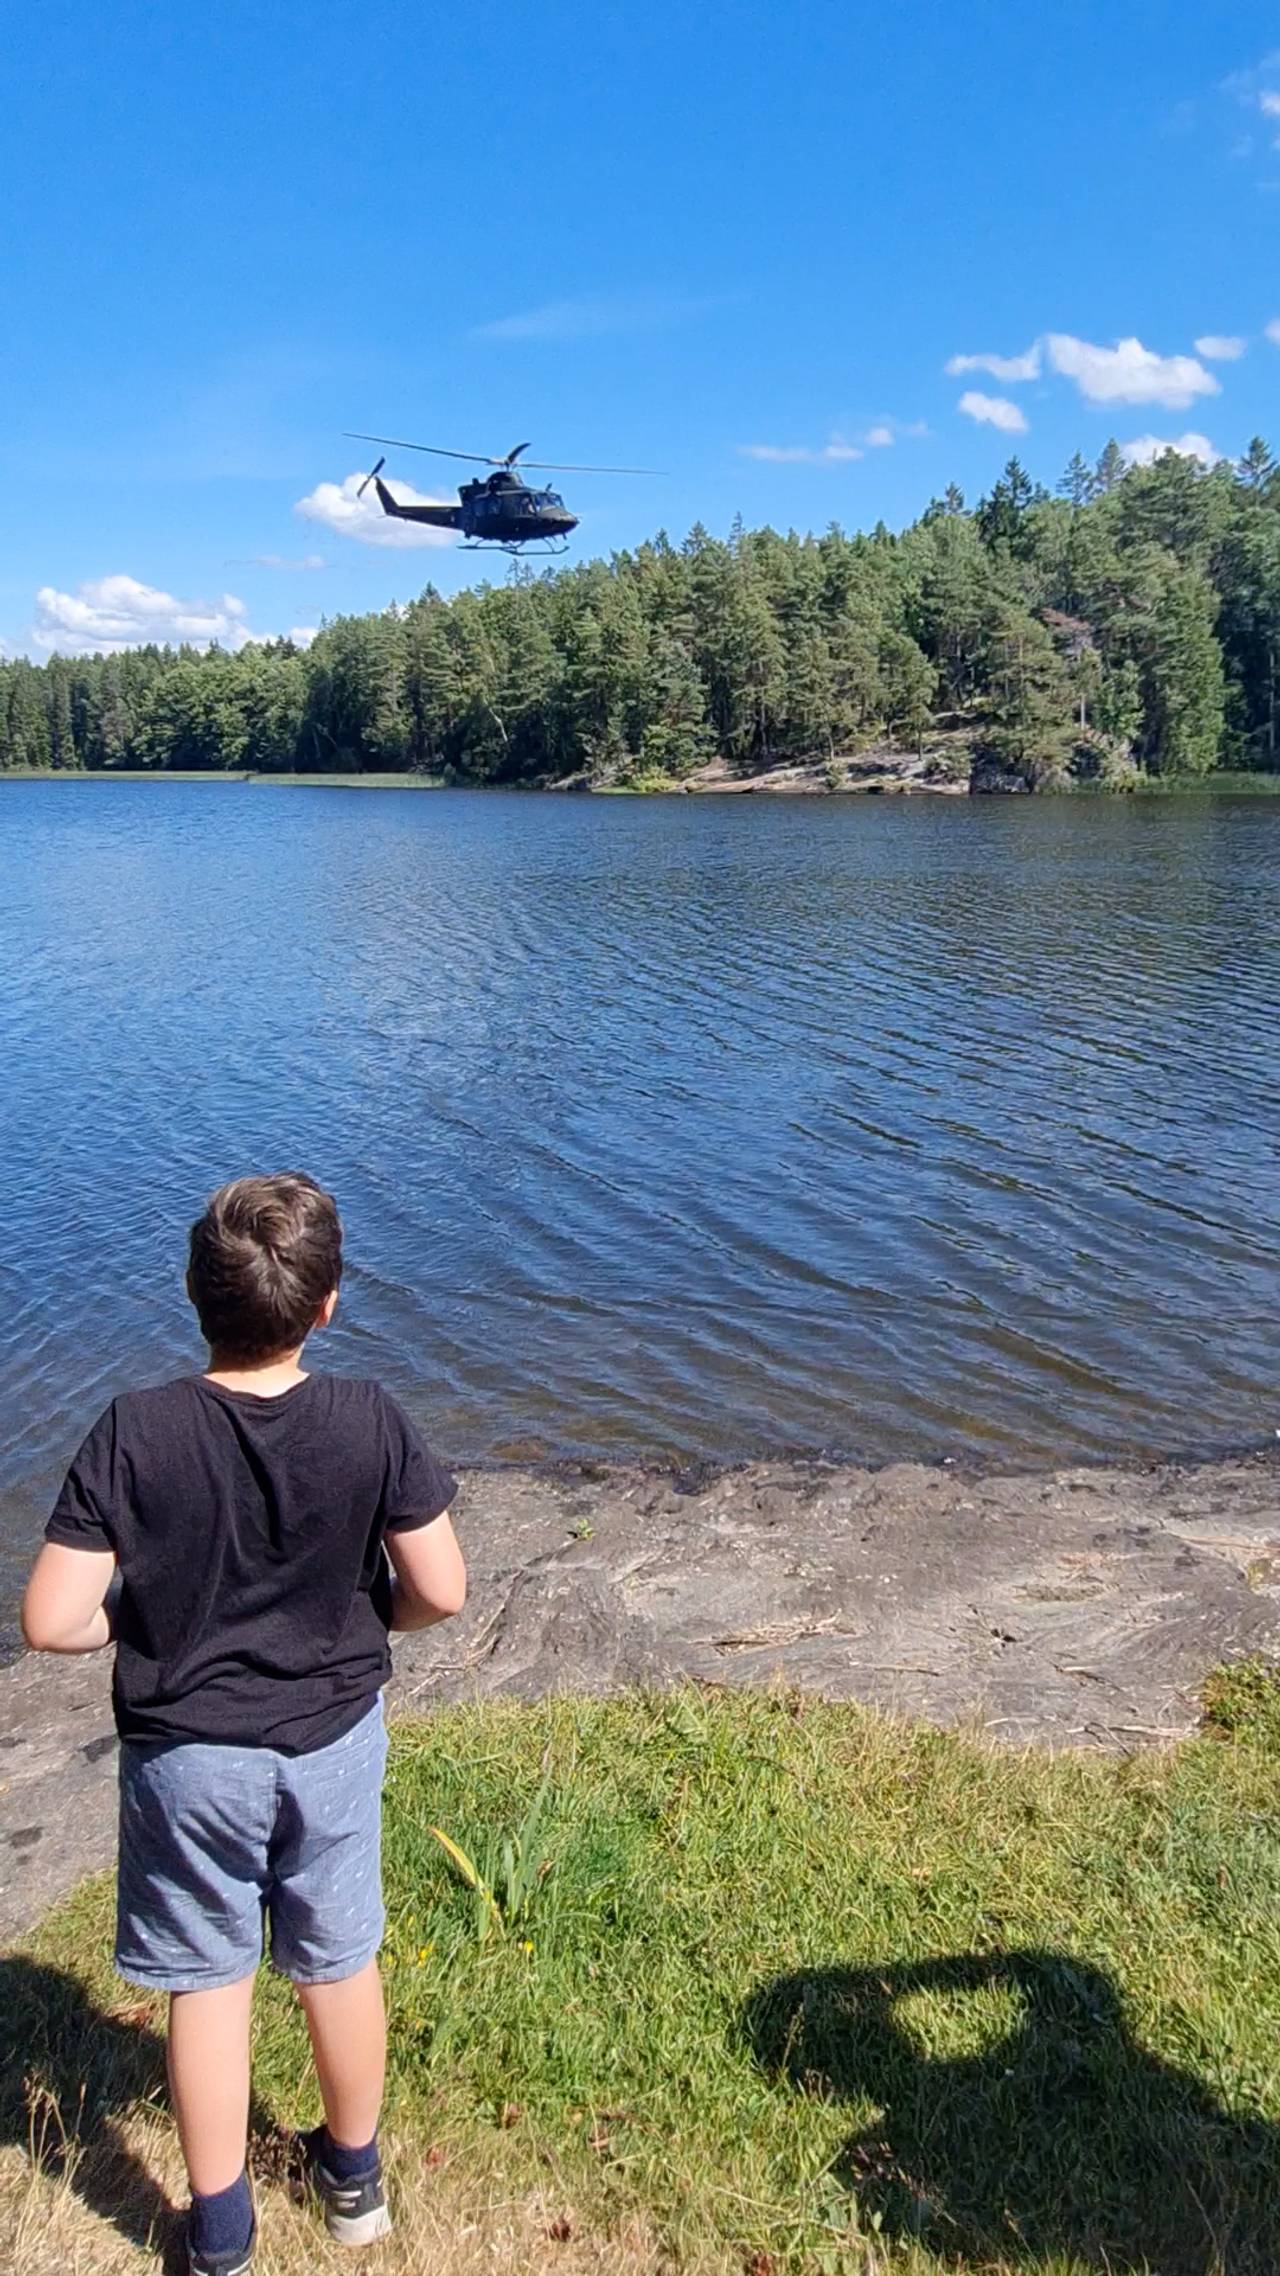 En liten gutt ser på et helikopter som flyr lavt over Vansjø.